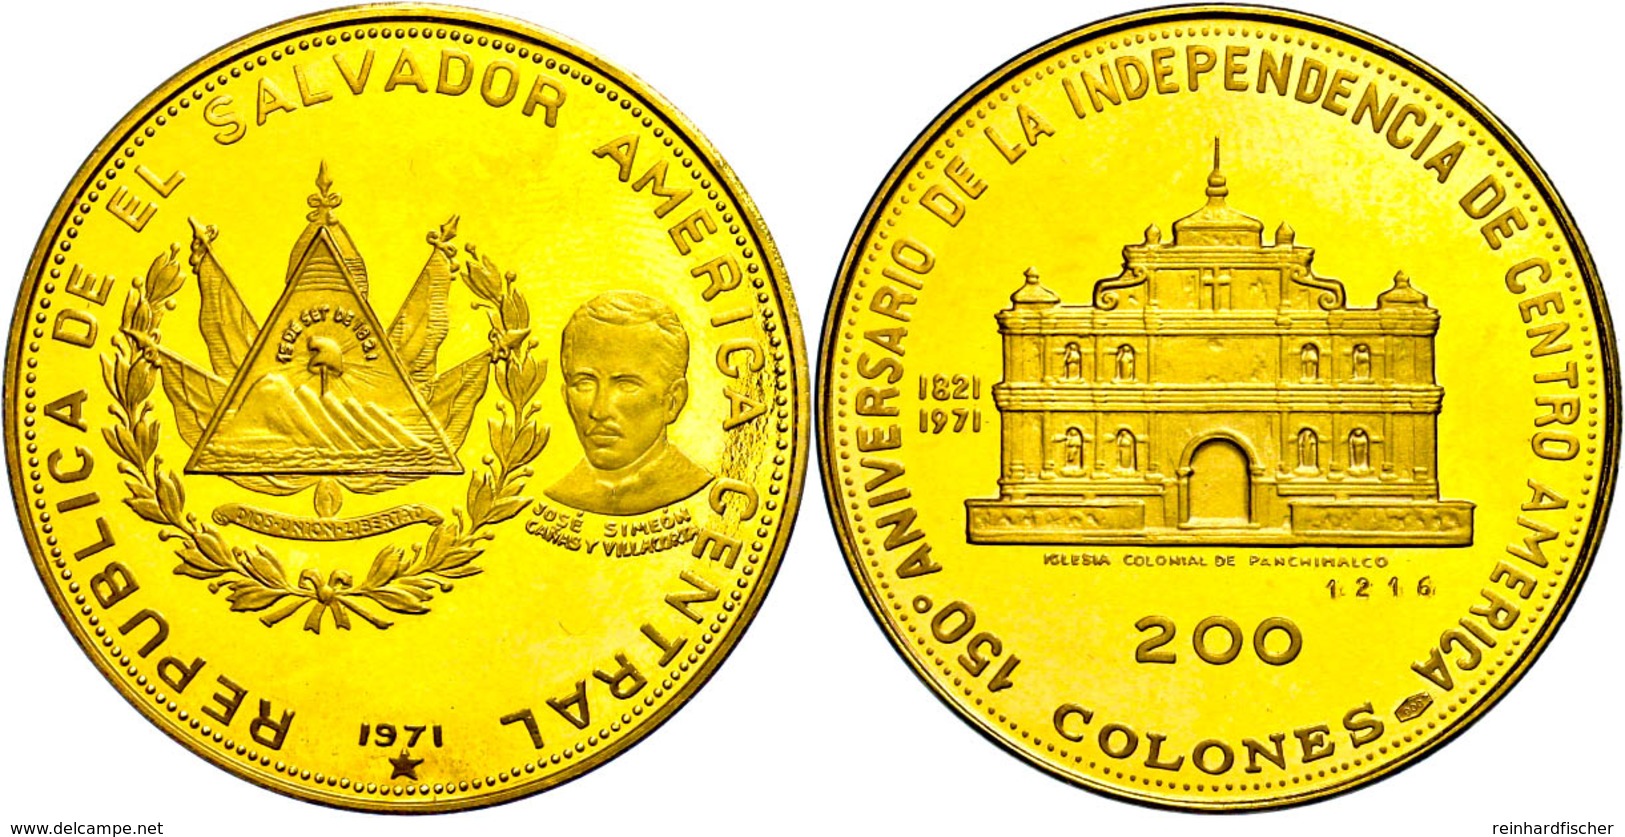 200 Colones, Gold, 1971, 150 Jahre Unabhängigkeit, Panchimalco Kirche, Fb. 6, Eingepunzte Nummer 1216, Fingerabdrücke, P - Sonstige – Amerika